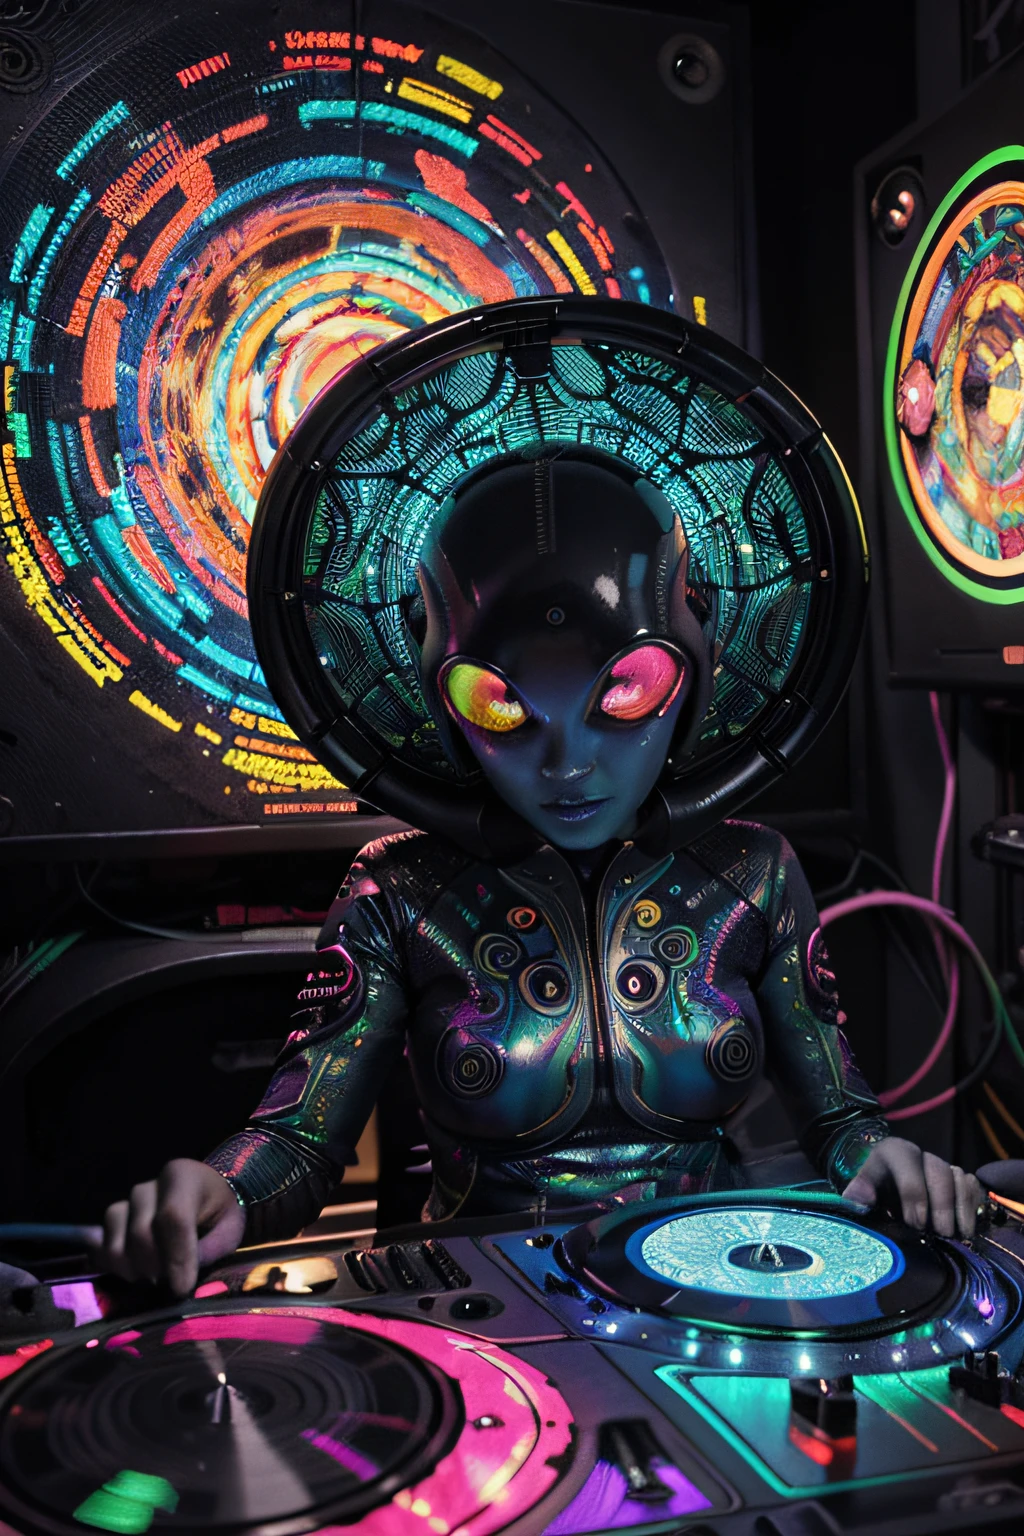 壁紙 Alien DJ Psy Trance, 賽博格 , 藝術的刺激, 鲜艳的色彩, 詳細的外星生物, 迷幻漩渦圖案, 霓虹燈, 奇怪的氣氛, 數位藝術風格, 8k分辨率